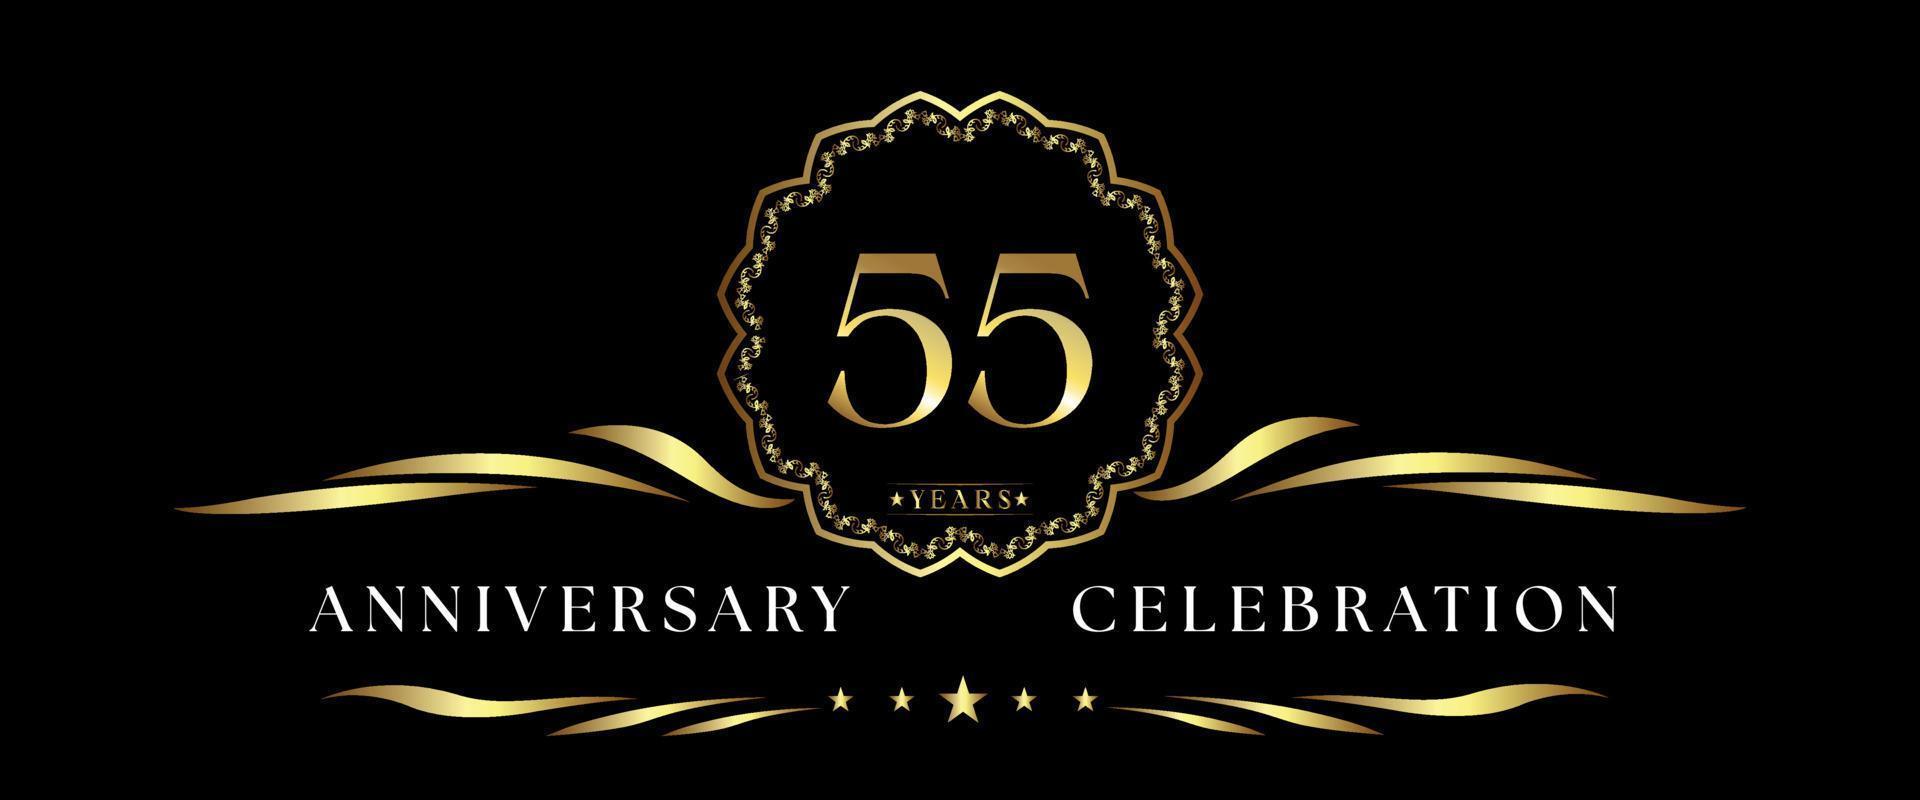 Celebração de aniversário de 55 anos com moldura decorativa dourada isolada em fundo preto. design vetorial para cartão de felicitações, festa de aniversário, casamento, festa de evento, cerimônia. logotipo de aniversário de 55 anos. vetor